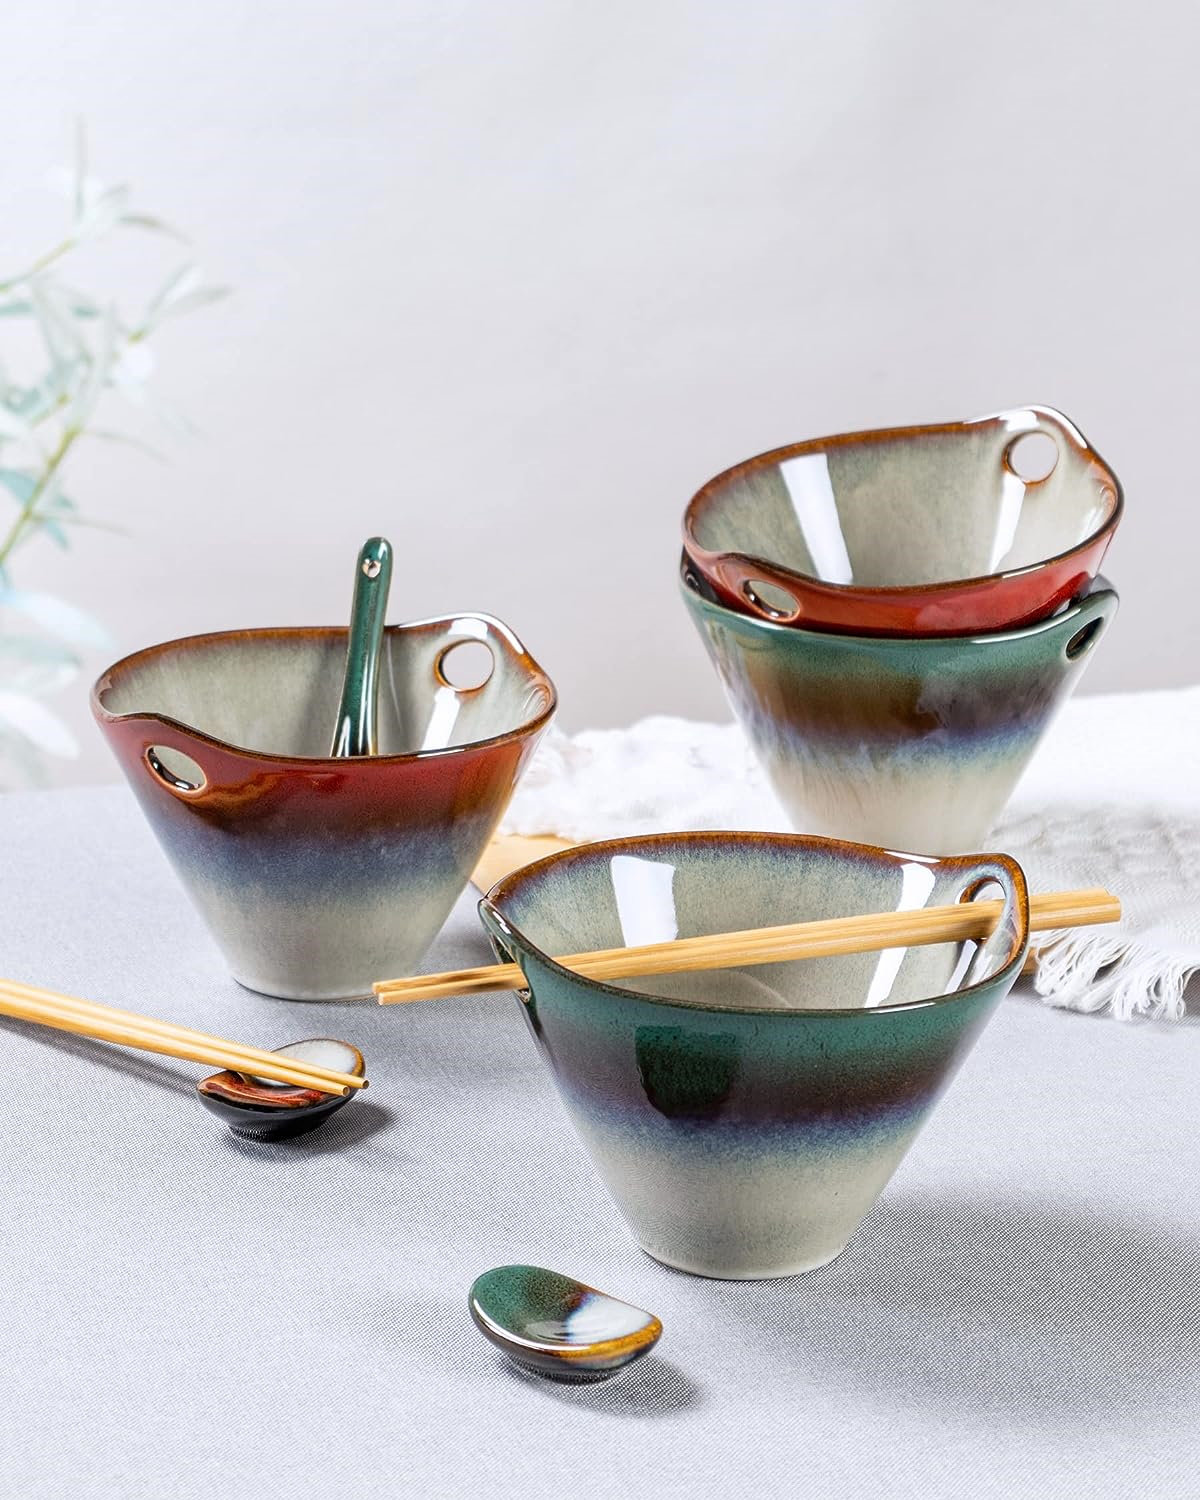 https://assets.wfcdn.com/im/65897544/compr-r85/2539/253969158/ceramic-japanese-ramen-noodle-bowls-set-of-2-deep-soup-bowls-with-spoons-chopsticks-and-holder-20-oz-serving-dishes-for-pho-udon-noodle-cereal-reactive-green.jpg